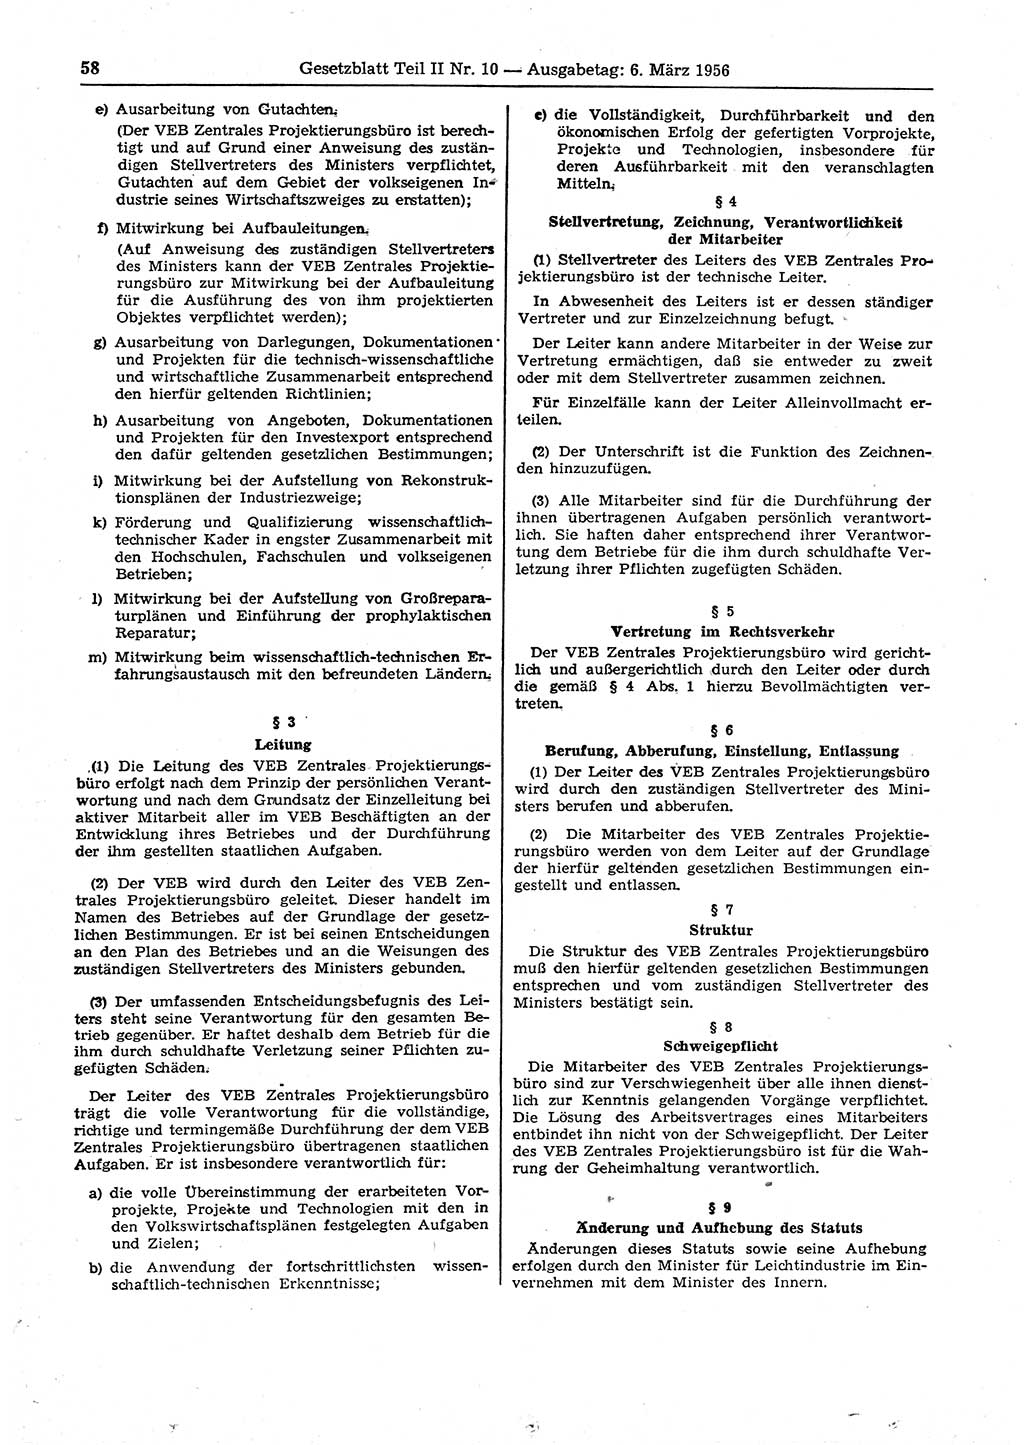 Gesetzblatt (GBl.) der Deutschen Demokratischen Republik (DDR) Teil ⅠⅠ 1956, Seite 58 (GBl. DDR ⅠⅠ 1956, S. 58)